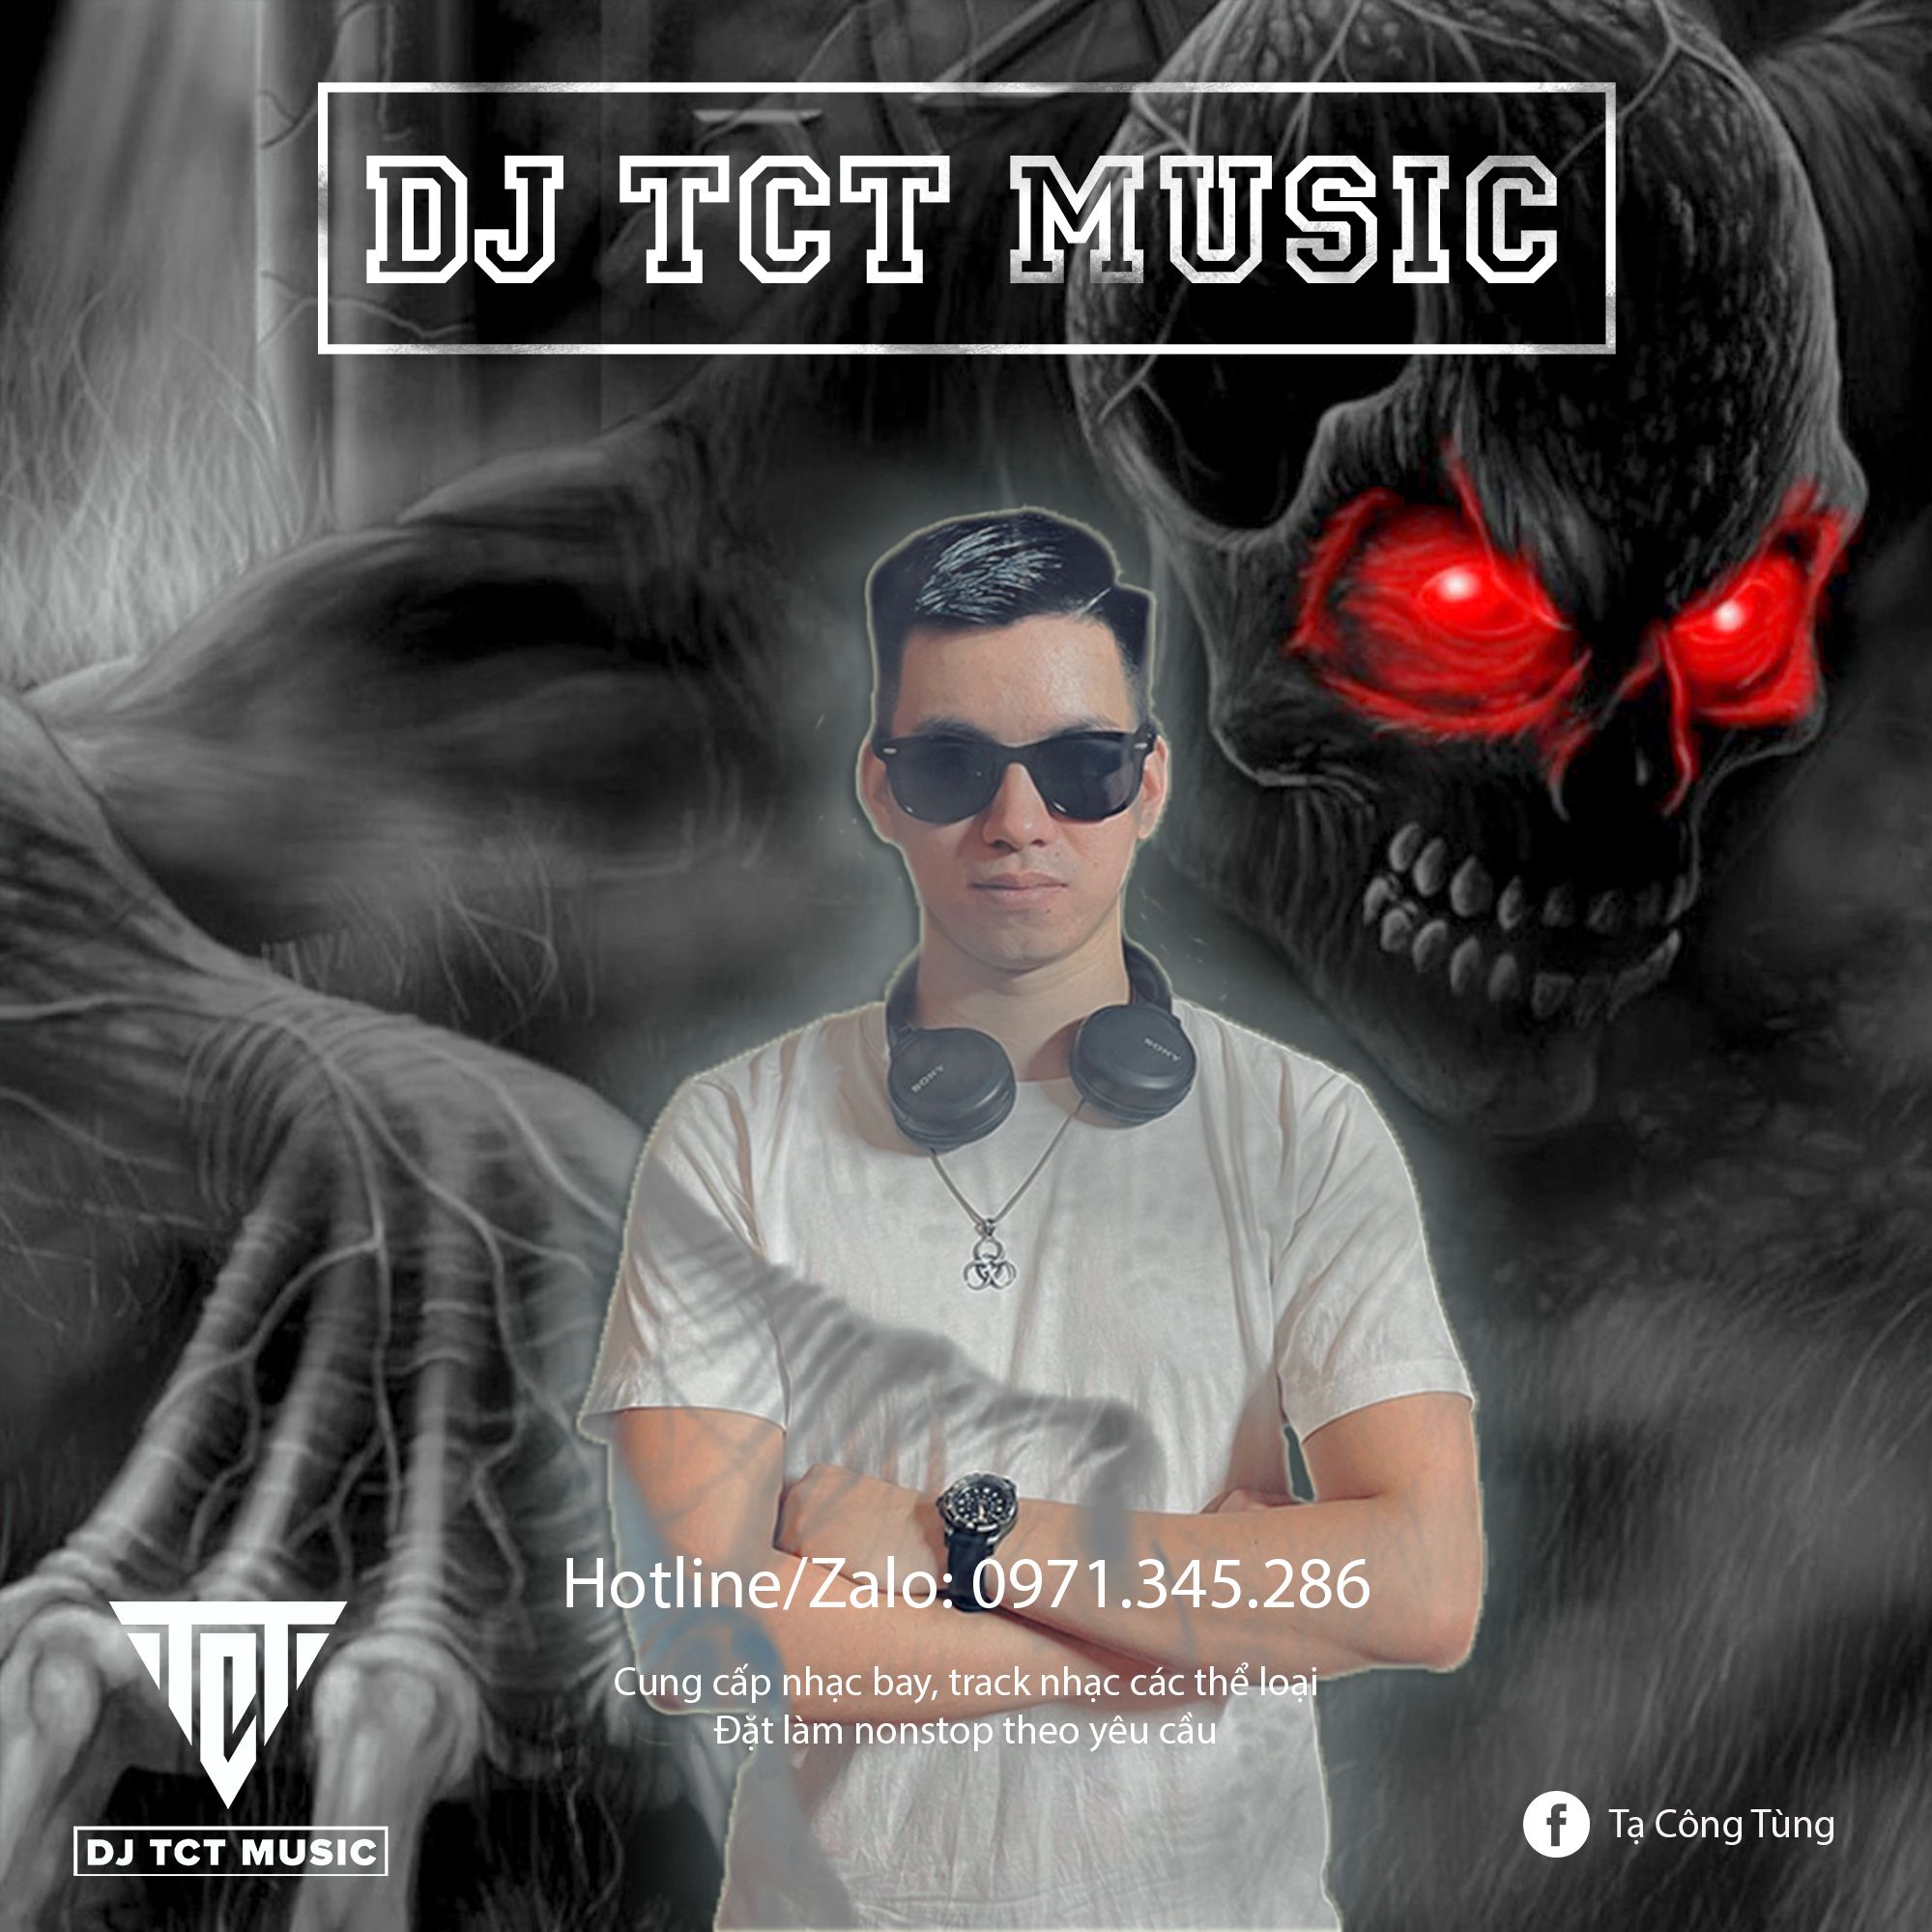 බාගත NONSTOP VIỆT MIX LỜI NGUYỀN 2022 .WAV / DJ TCT MUSIC 0971345286 / TRACK NHẠC BAY PHÒNG HAY NHẤT 2022